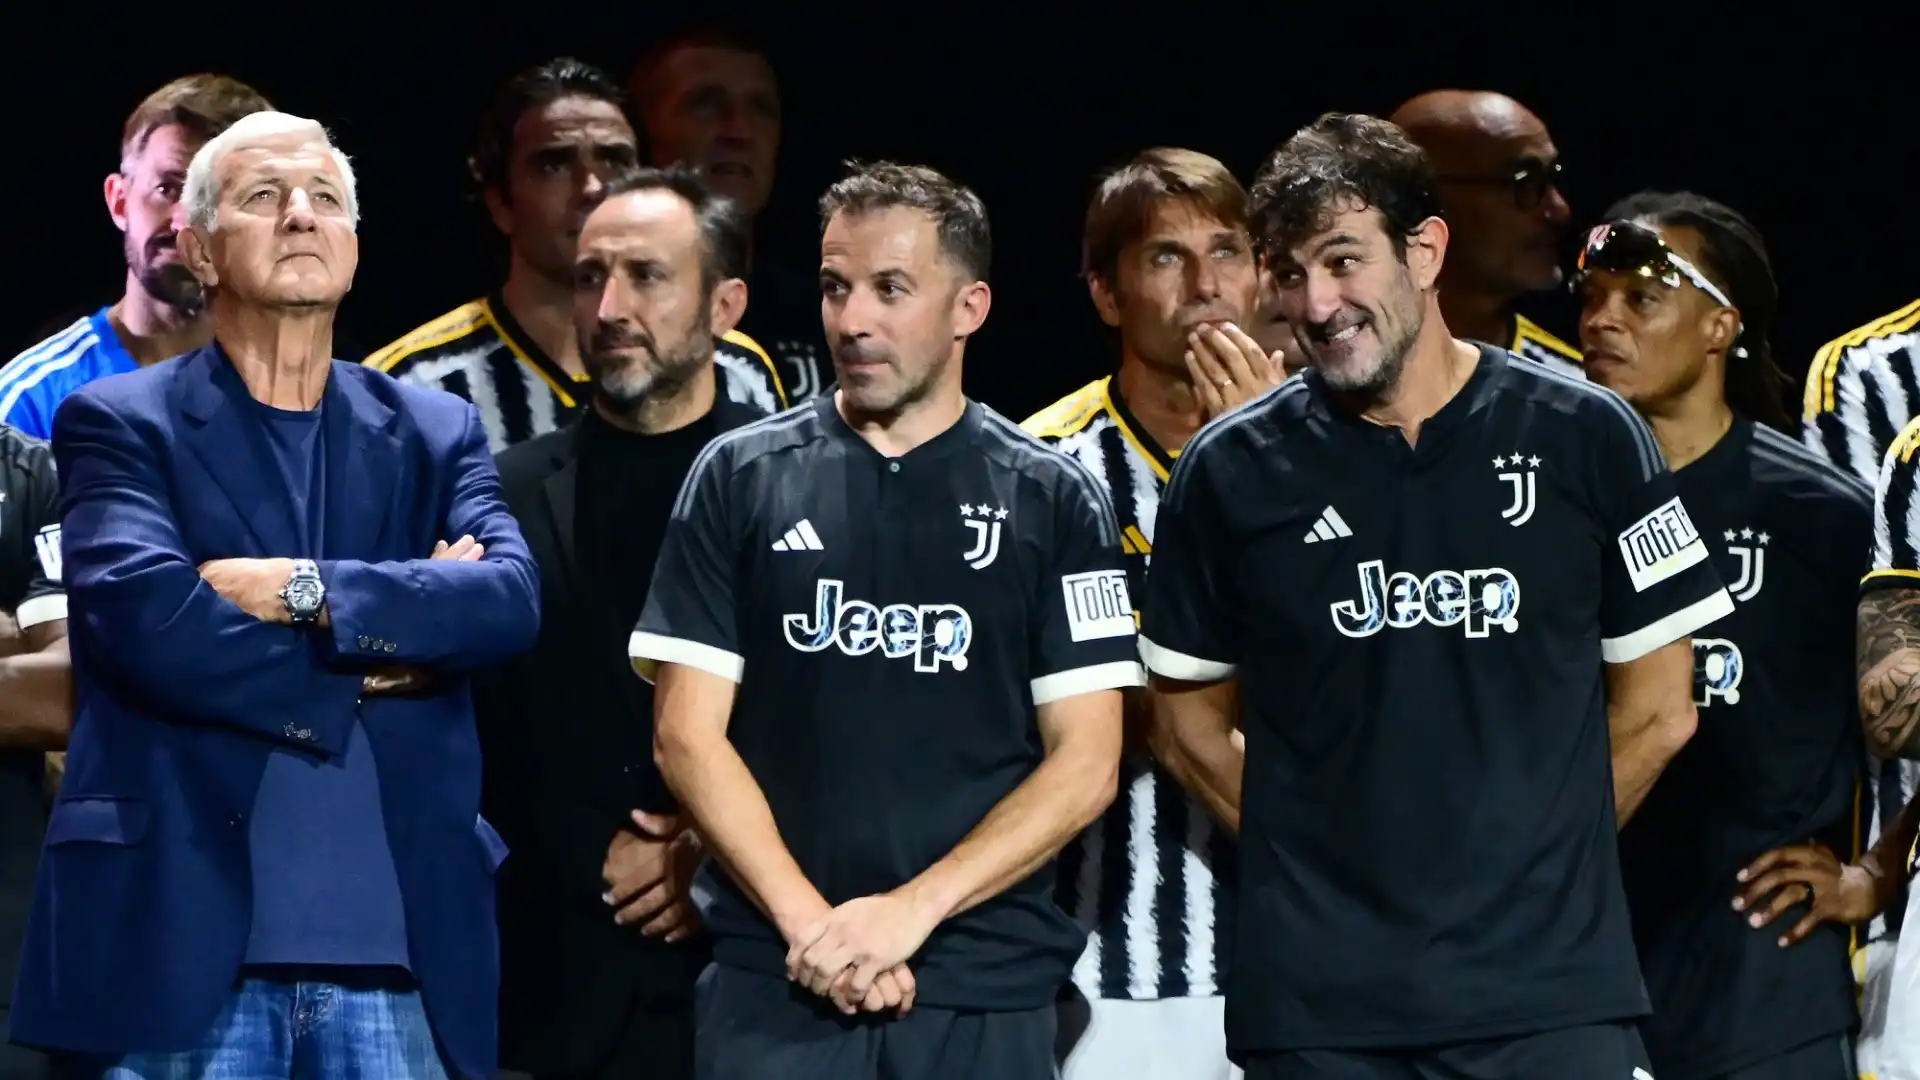 Tifosi della Juventus ancora in estasi per l'evento "Together" che ha celebrato i 100 anni della storia bianconera con la famiglia Agnelli